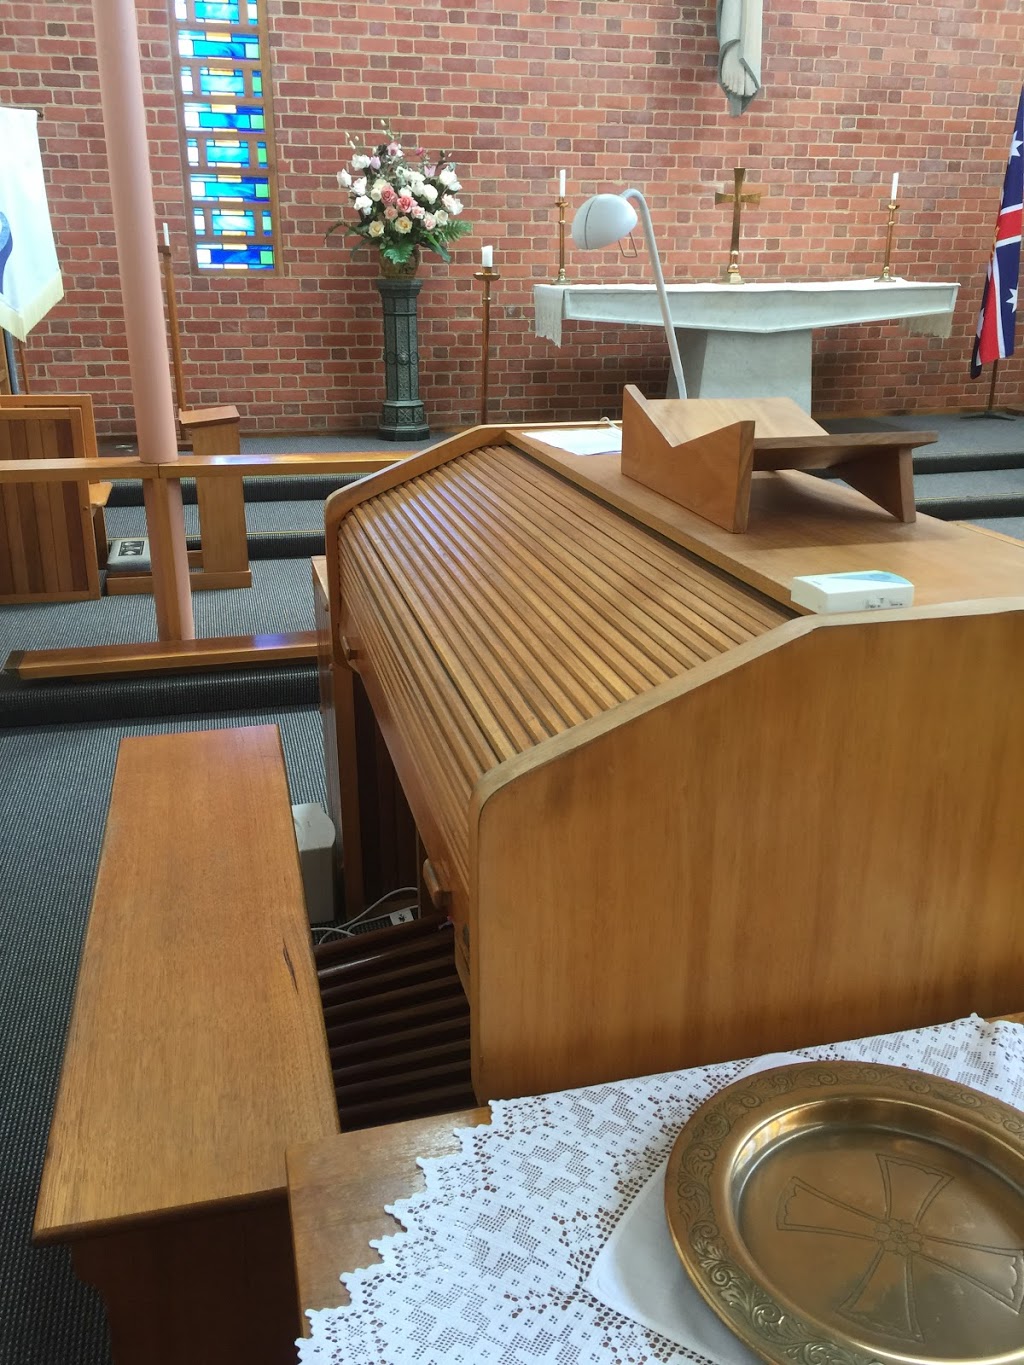 All Saints Anglican Church | church | 18 Edward St, Mitcham VIC 3132, Australia | 0398731210 OR +61 3 9873 1210